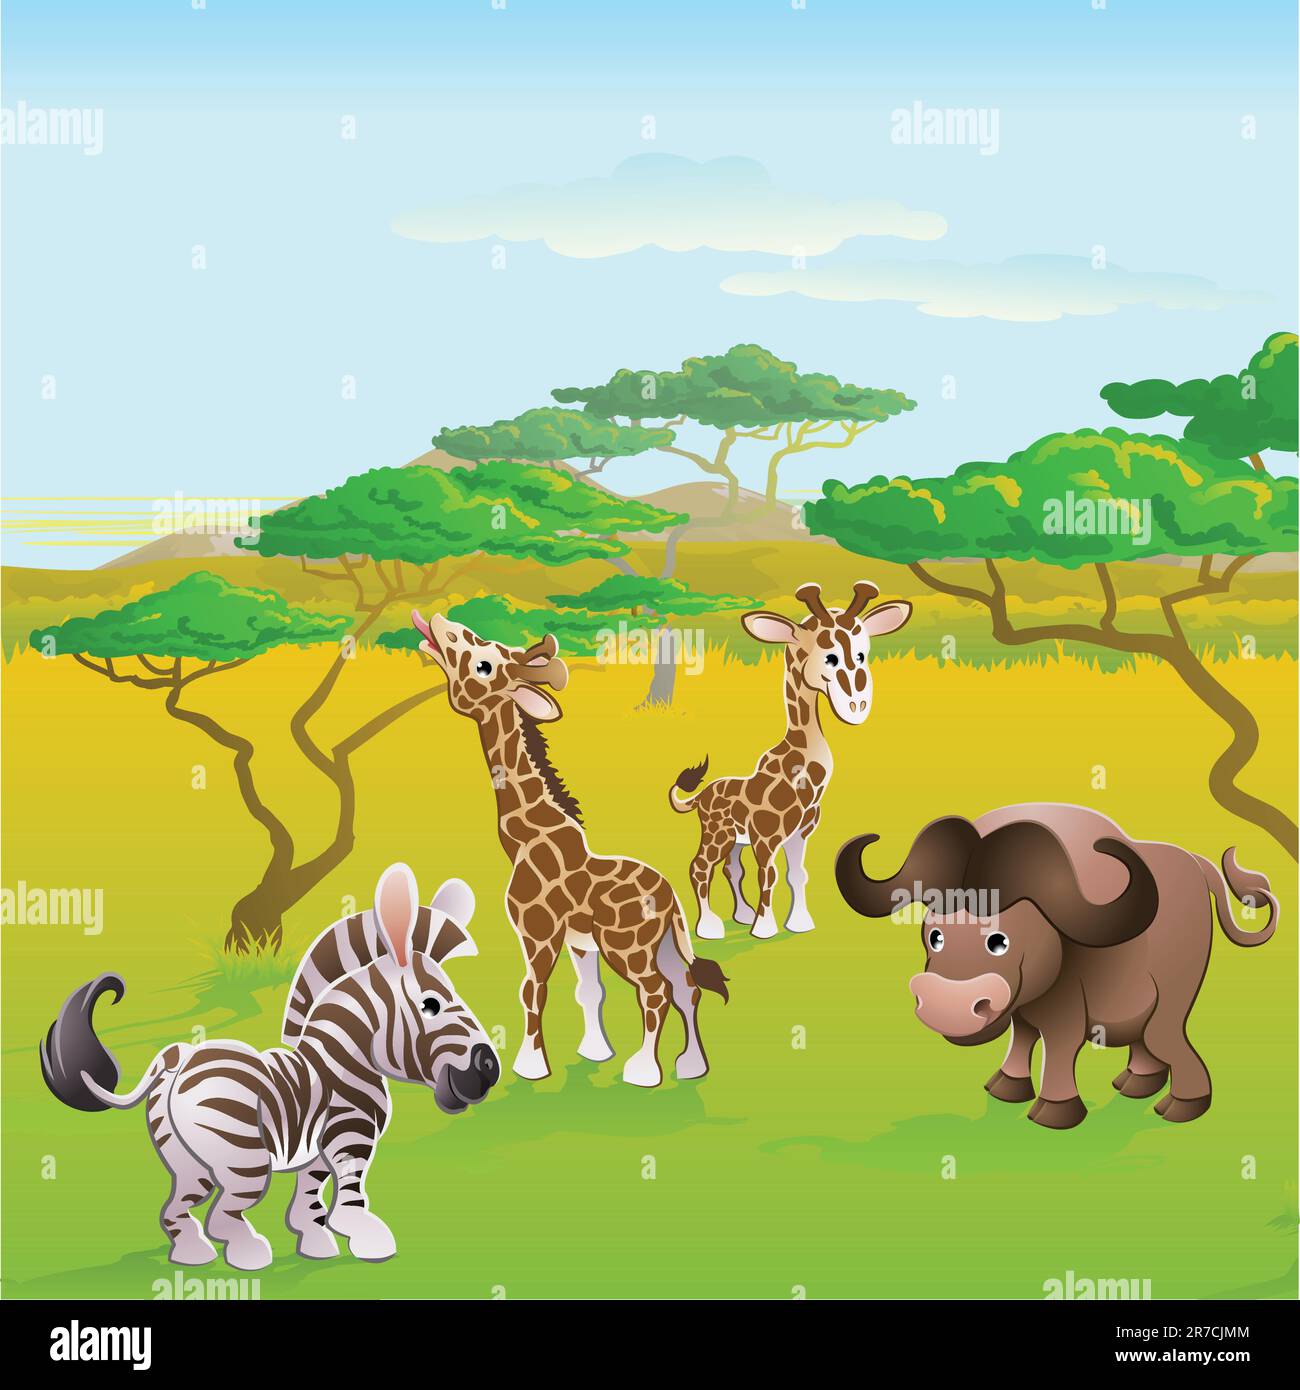 Scène de personnages de dessins animés animaux de safari africains mignons. Série de trois illustrations pouvant être utilisées séparément ou côte à côte pour former la... Illustration de Vecteur